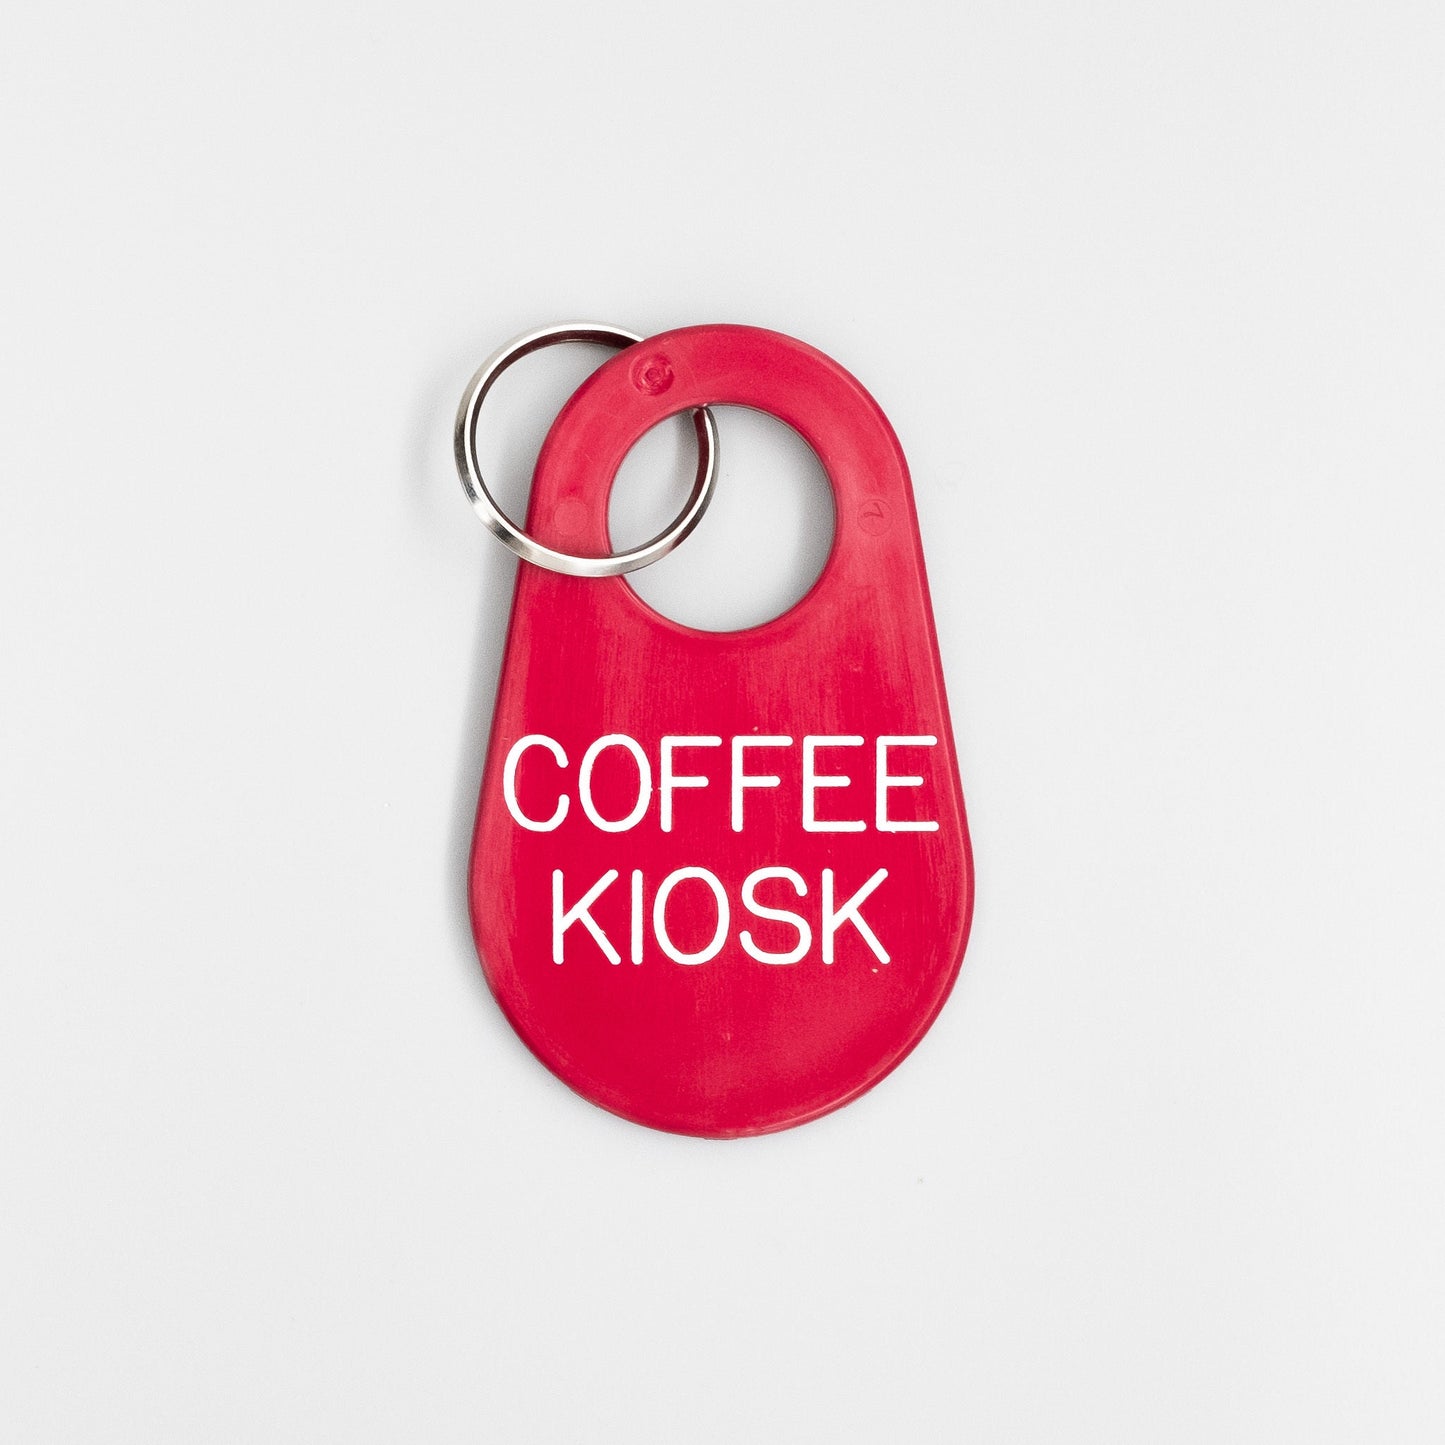 プラスチックキーホルダーB(coffeekiosk) - BE A GOOD NEIGHBOR COFFEE KIOSK